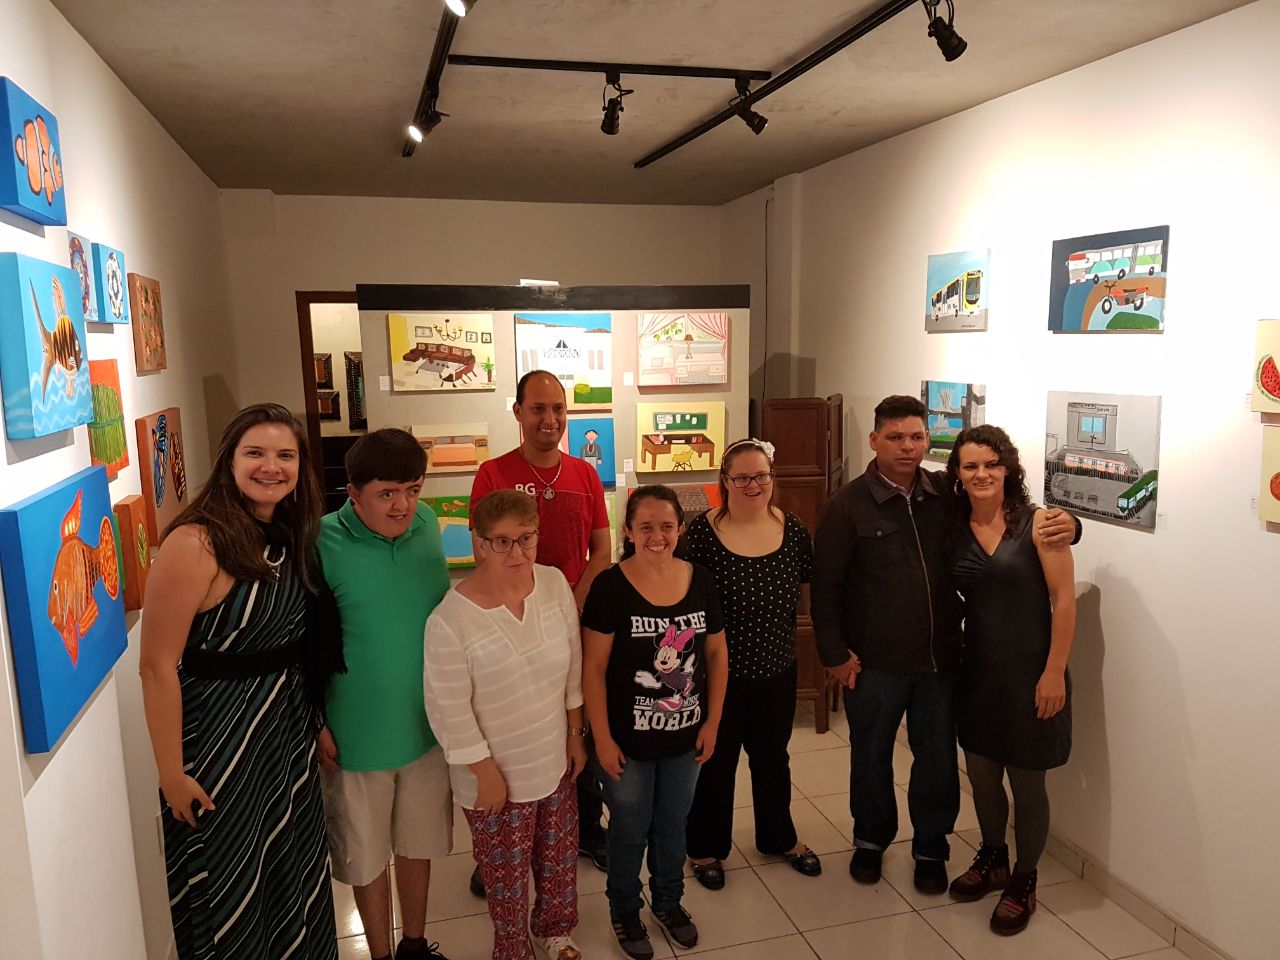 Nossa Coordenadora acompanhando os nossos artistas em sua primeira exposição de pinturas autorais, juntamente com a nossa Professora de Artes.